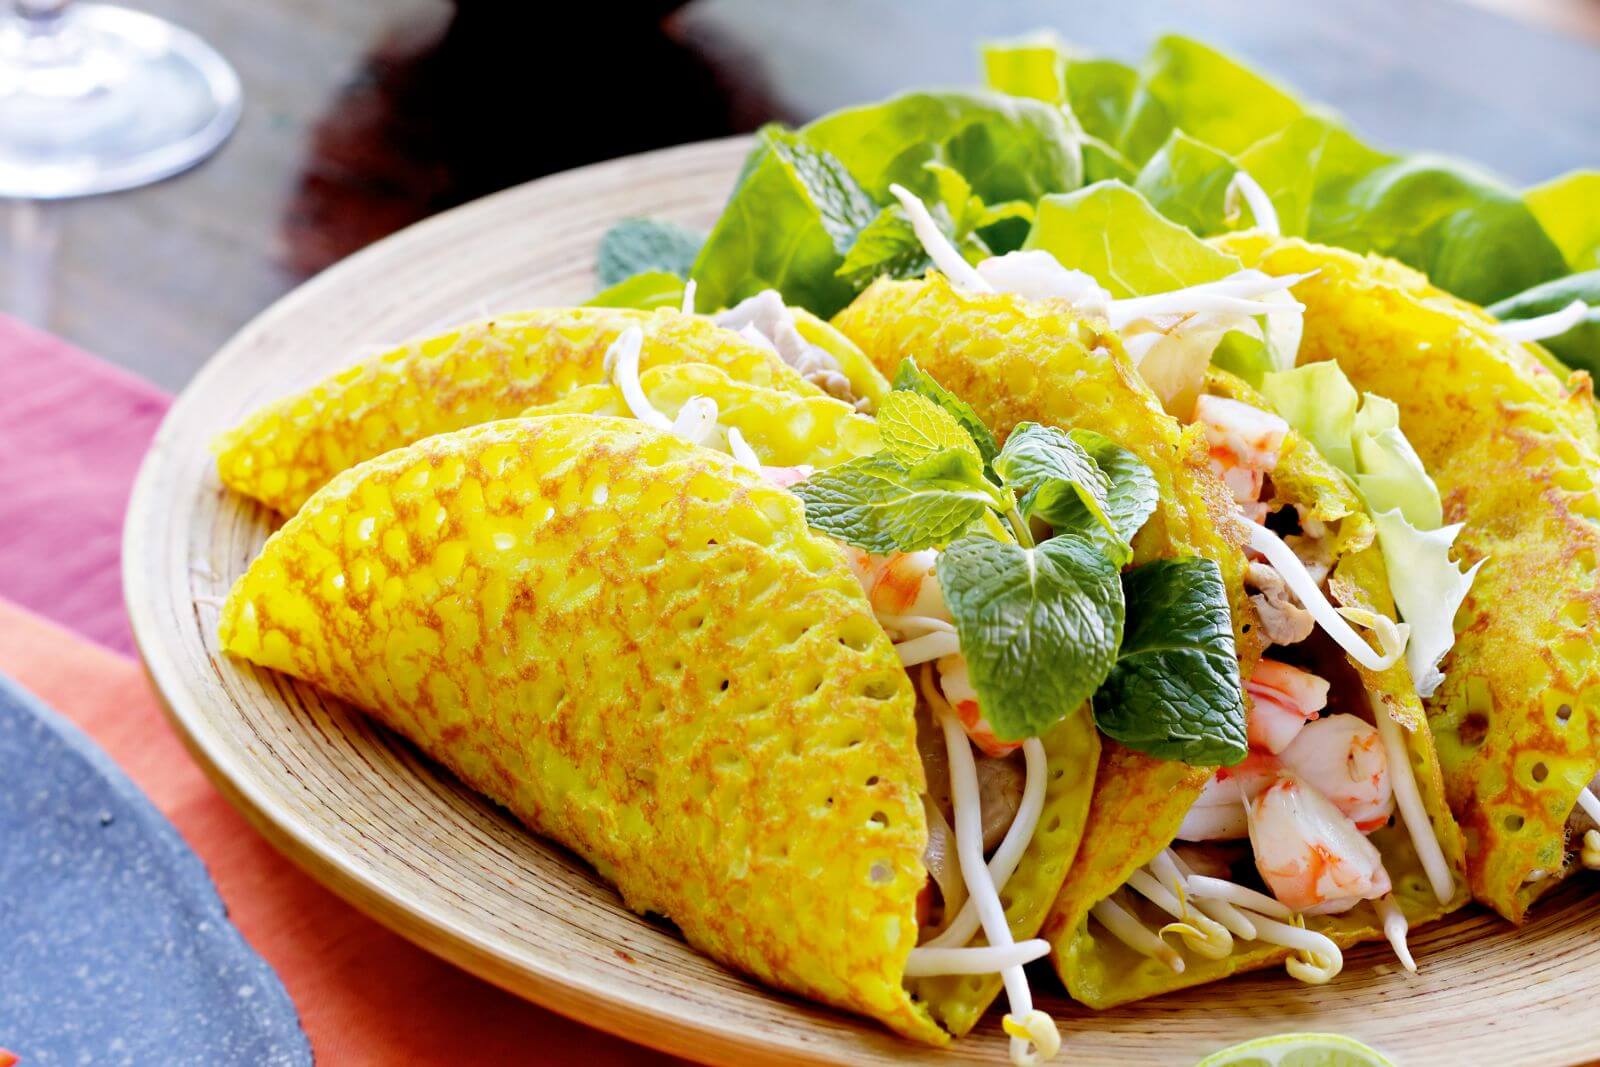 Bánh xèo mang đậm bản sắc của ẩm thực Việt